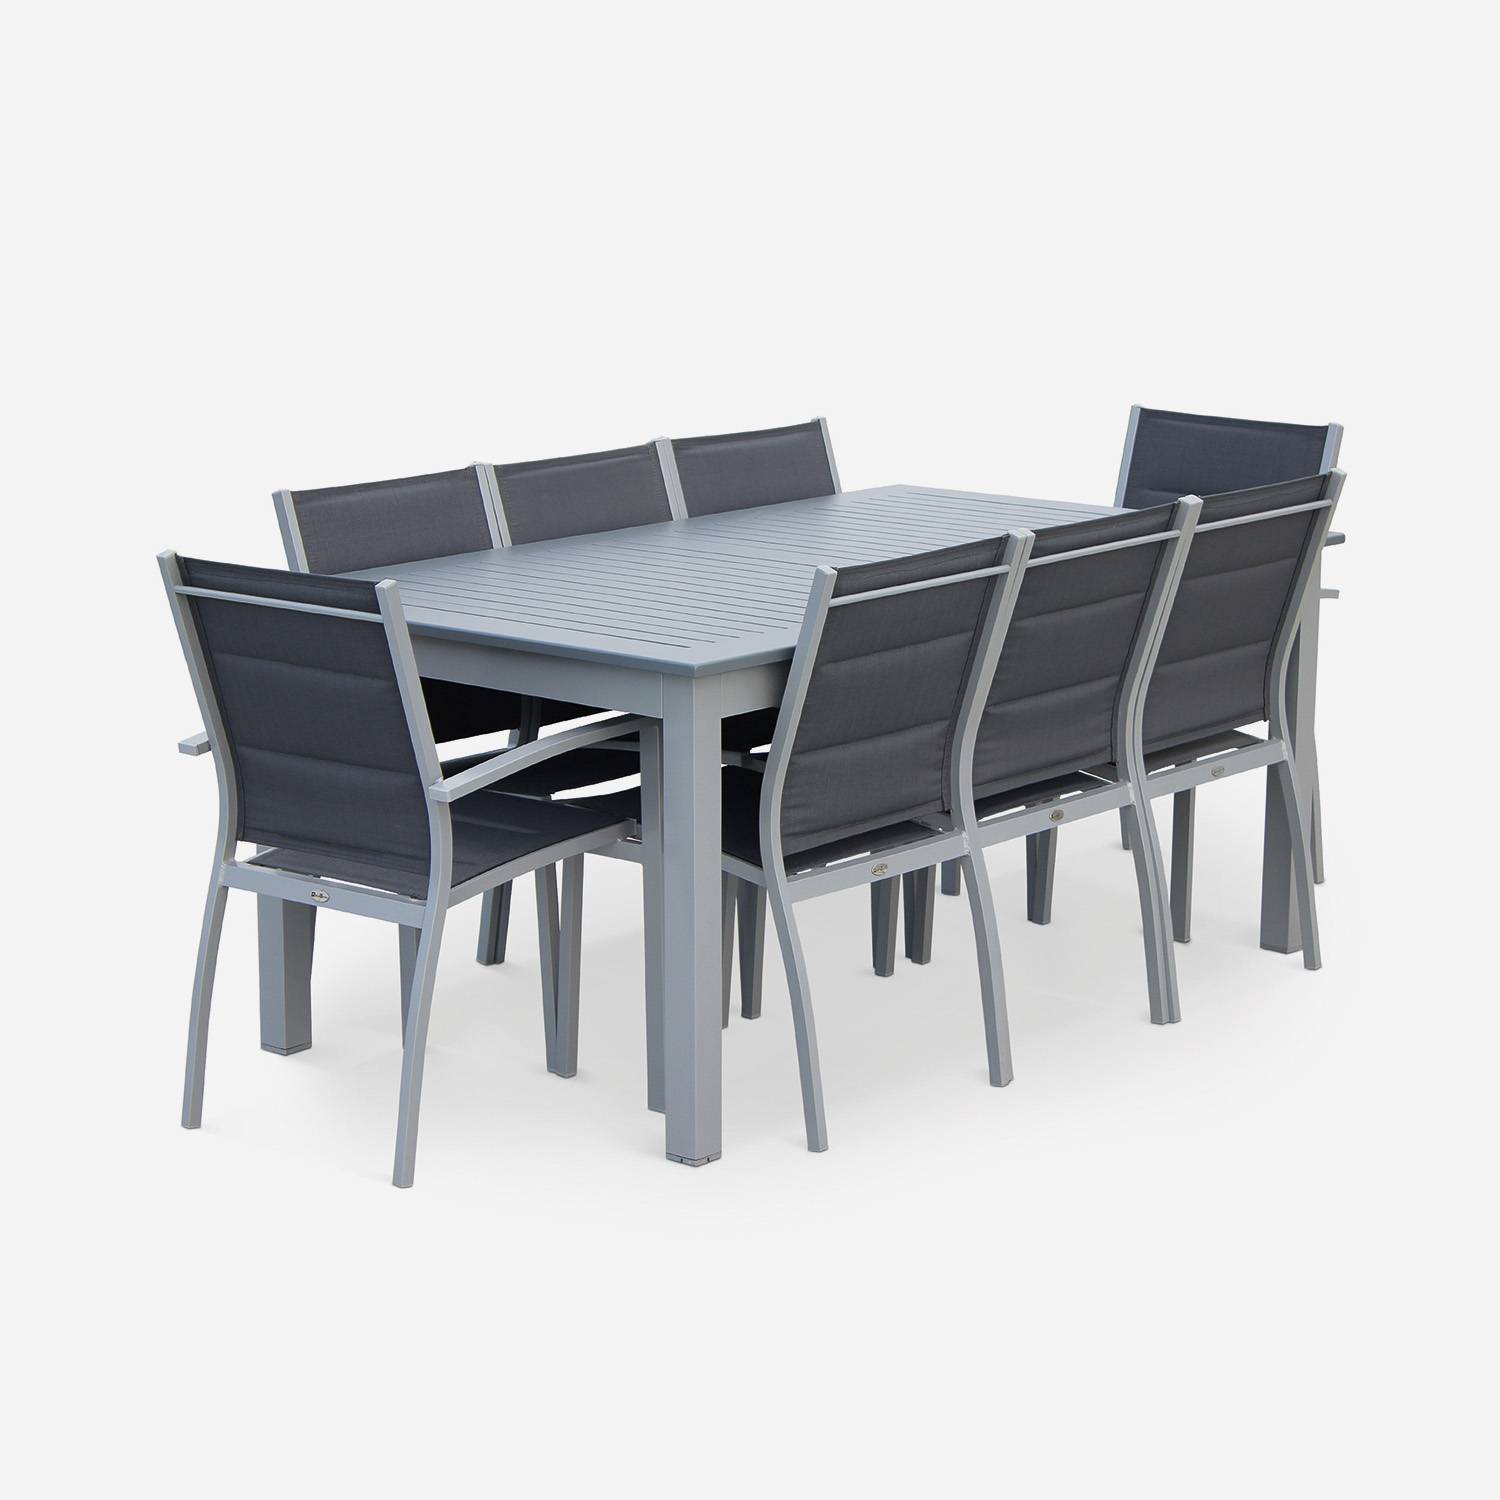 Set da giardino - modello: Chicago, colore: Grigio - Tavolo allungabile in alluminio, dimensioni: 175/245cm con prolunga e 8 sedute in textilene Photo3